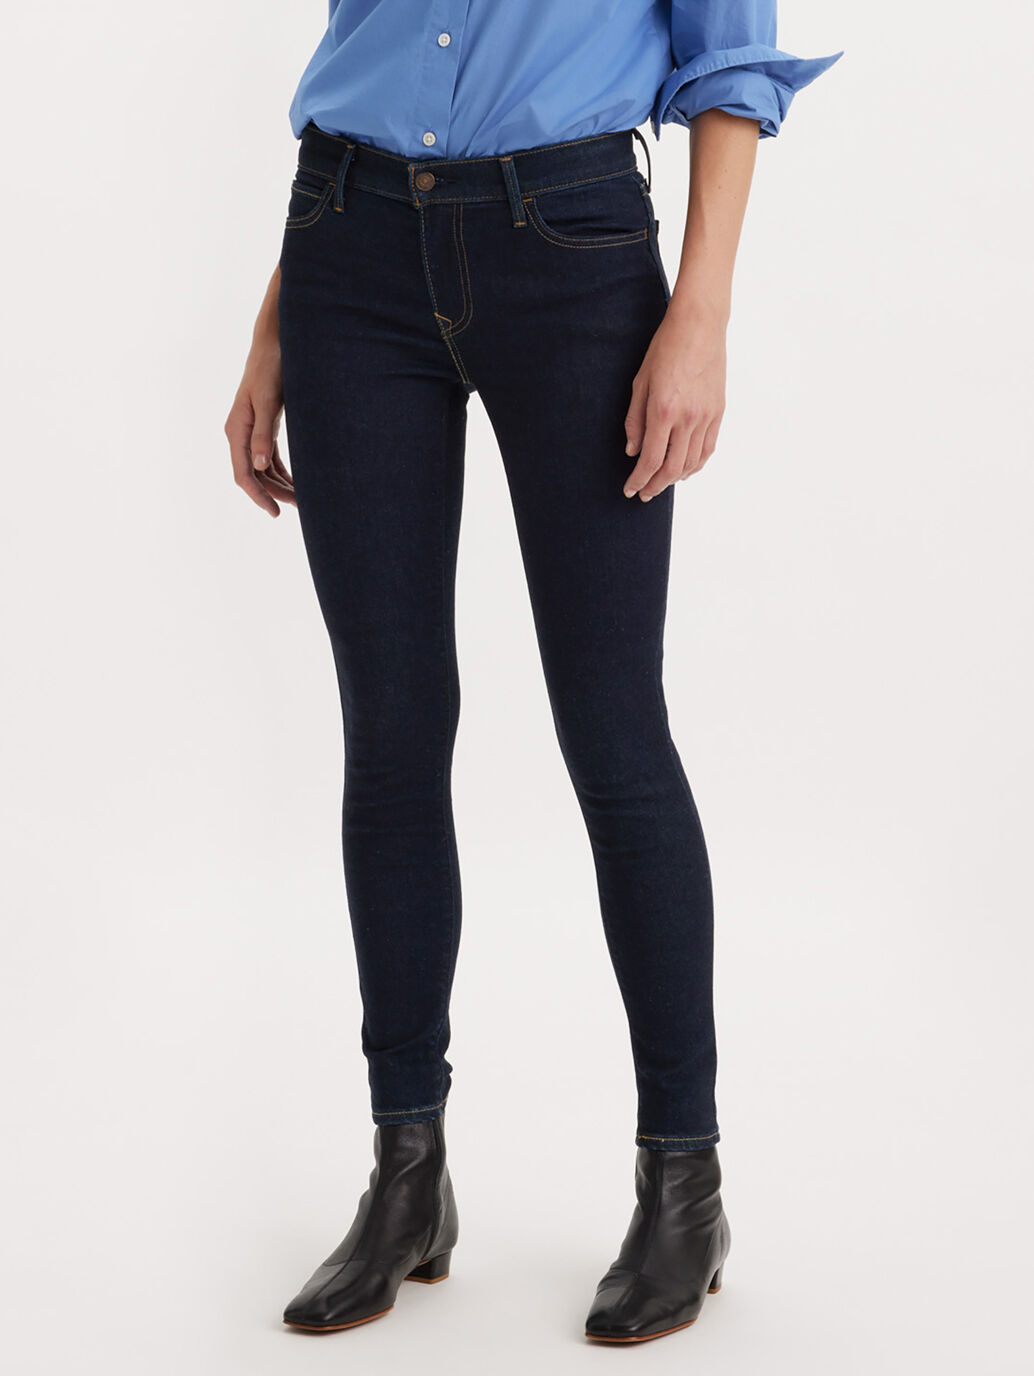 Levi’s® Women's 710 Mid-Rise Super Skinny Jeans - Don't Let It Go